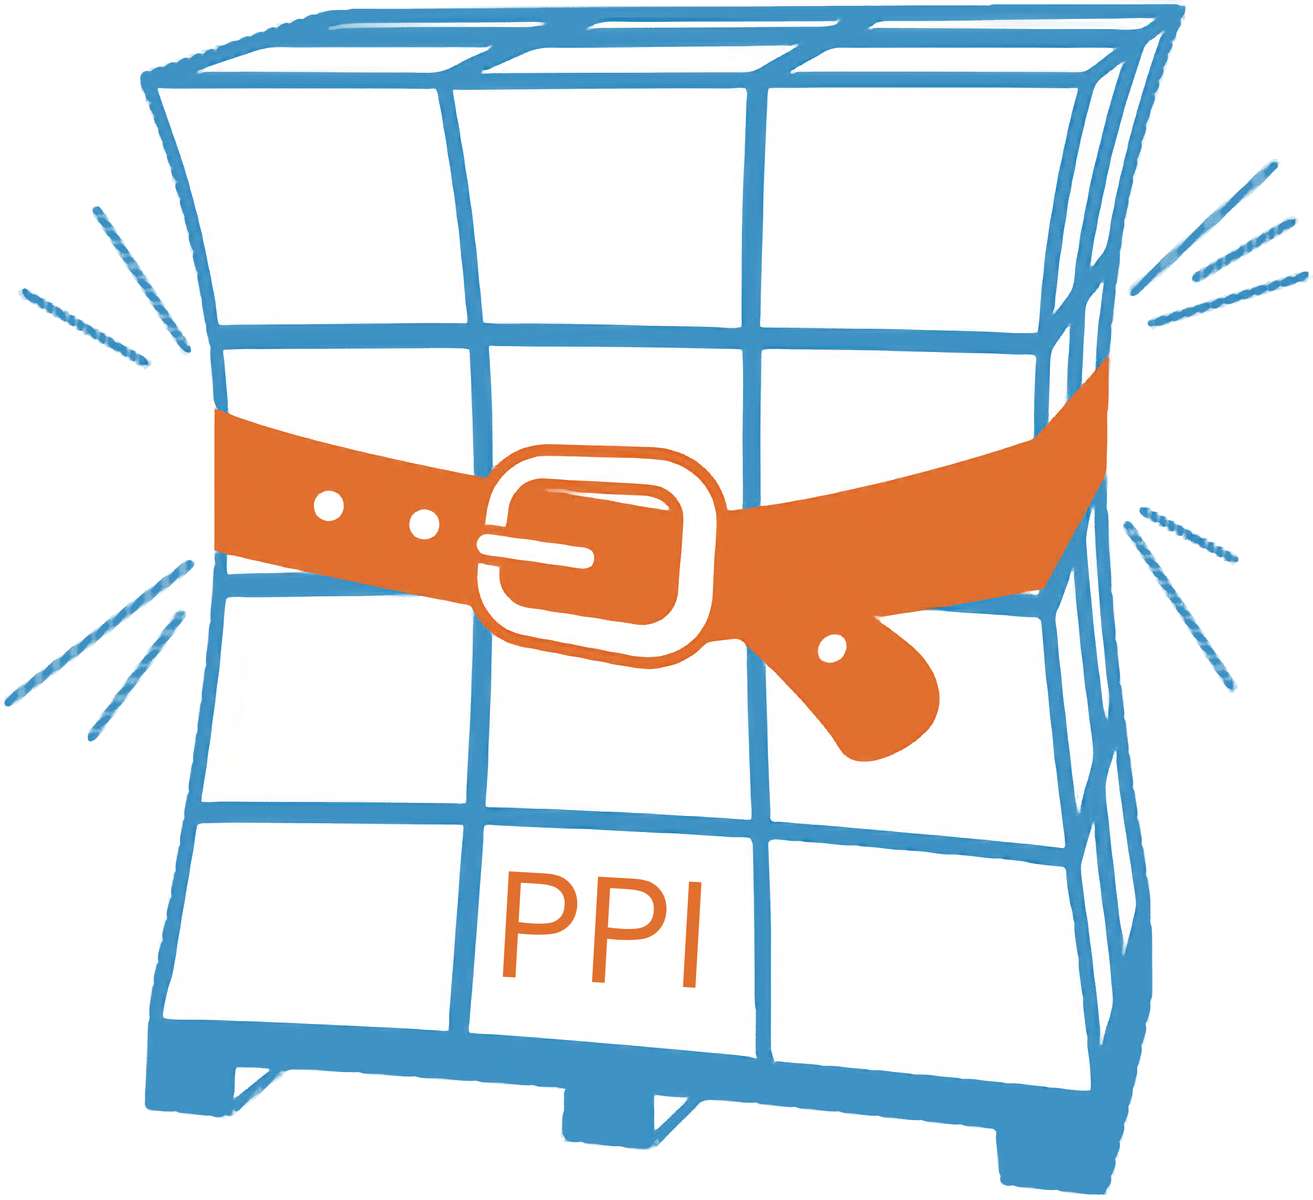 PPI プレゼンテーション 写真からオンラインパズル